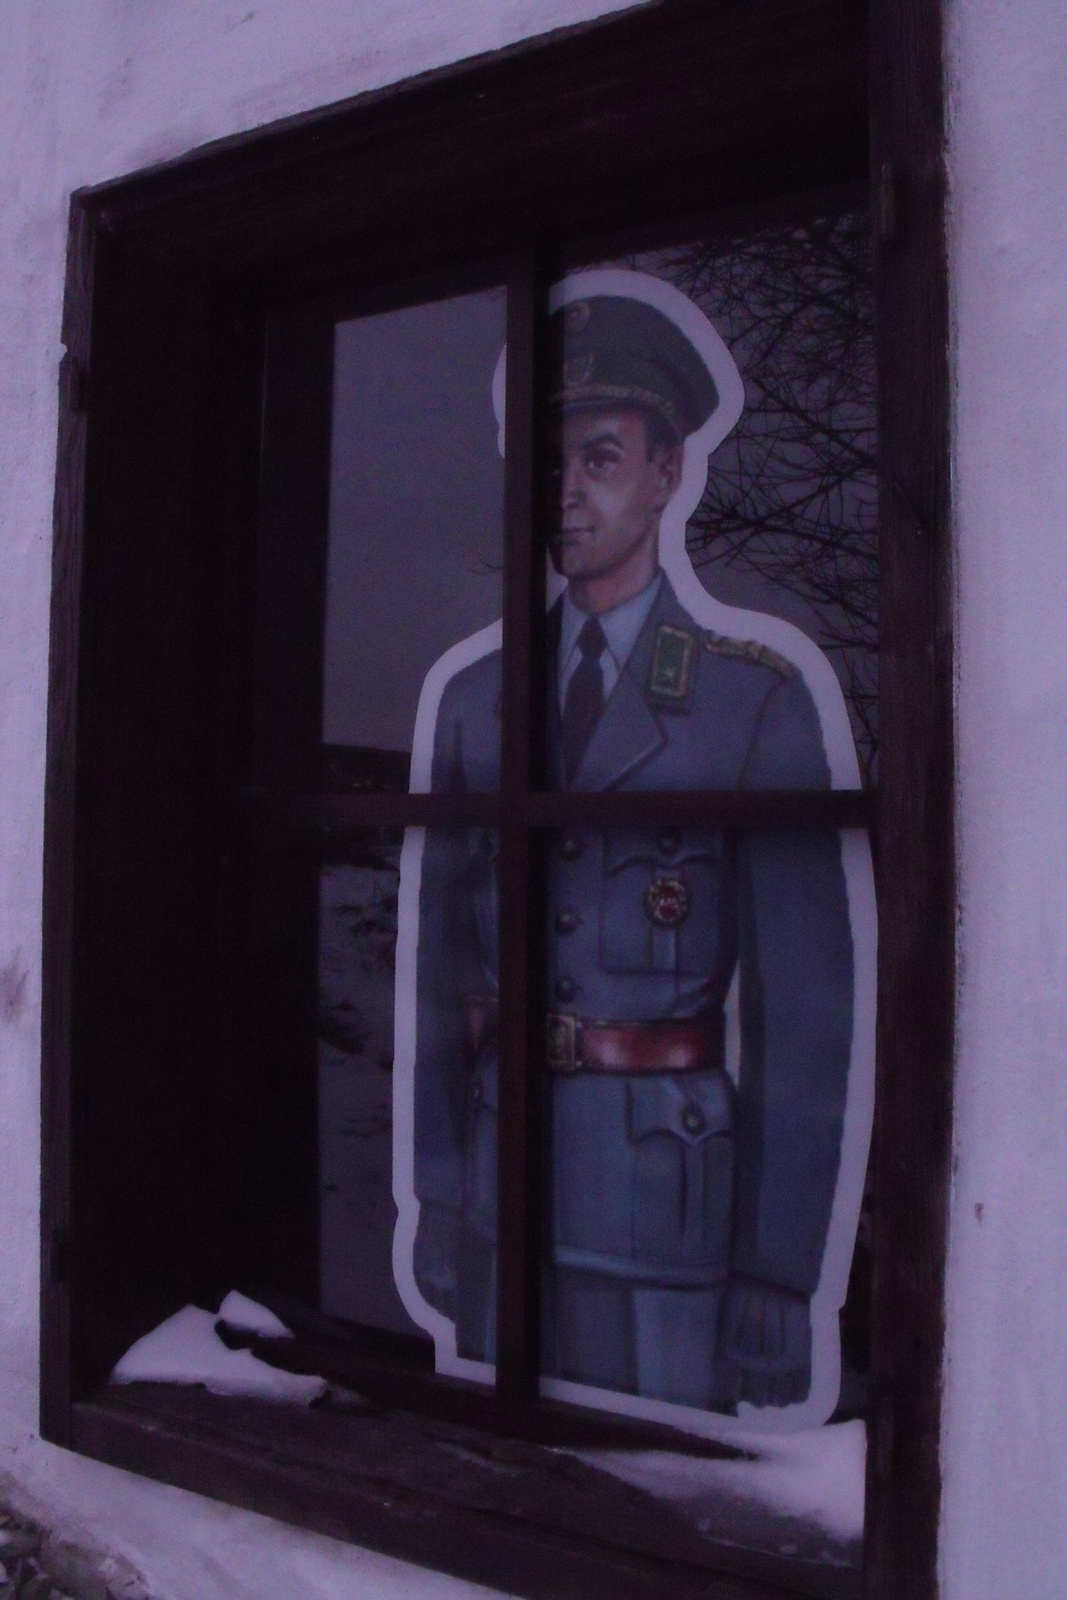 1501010213 Bucsu fele figyelő katona rajza az ablakban